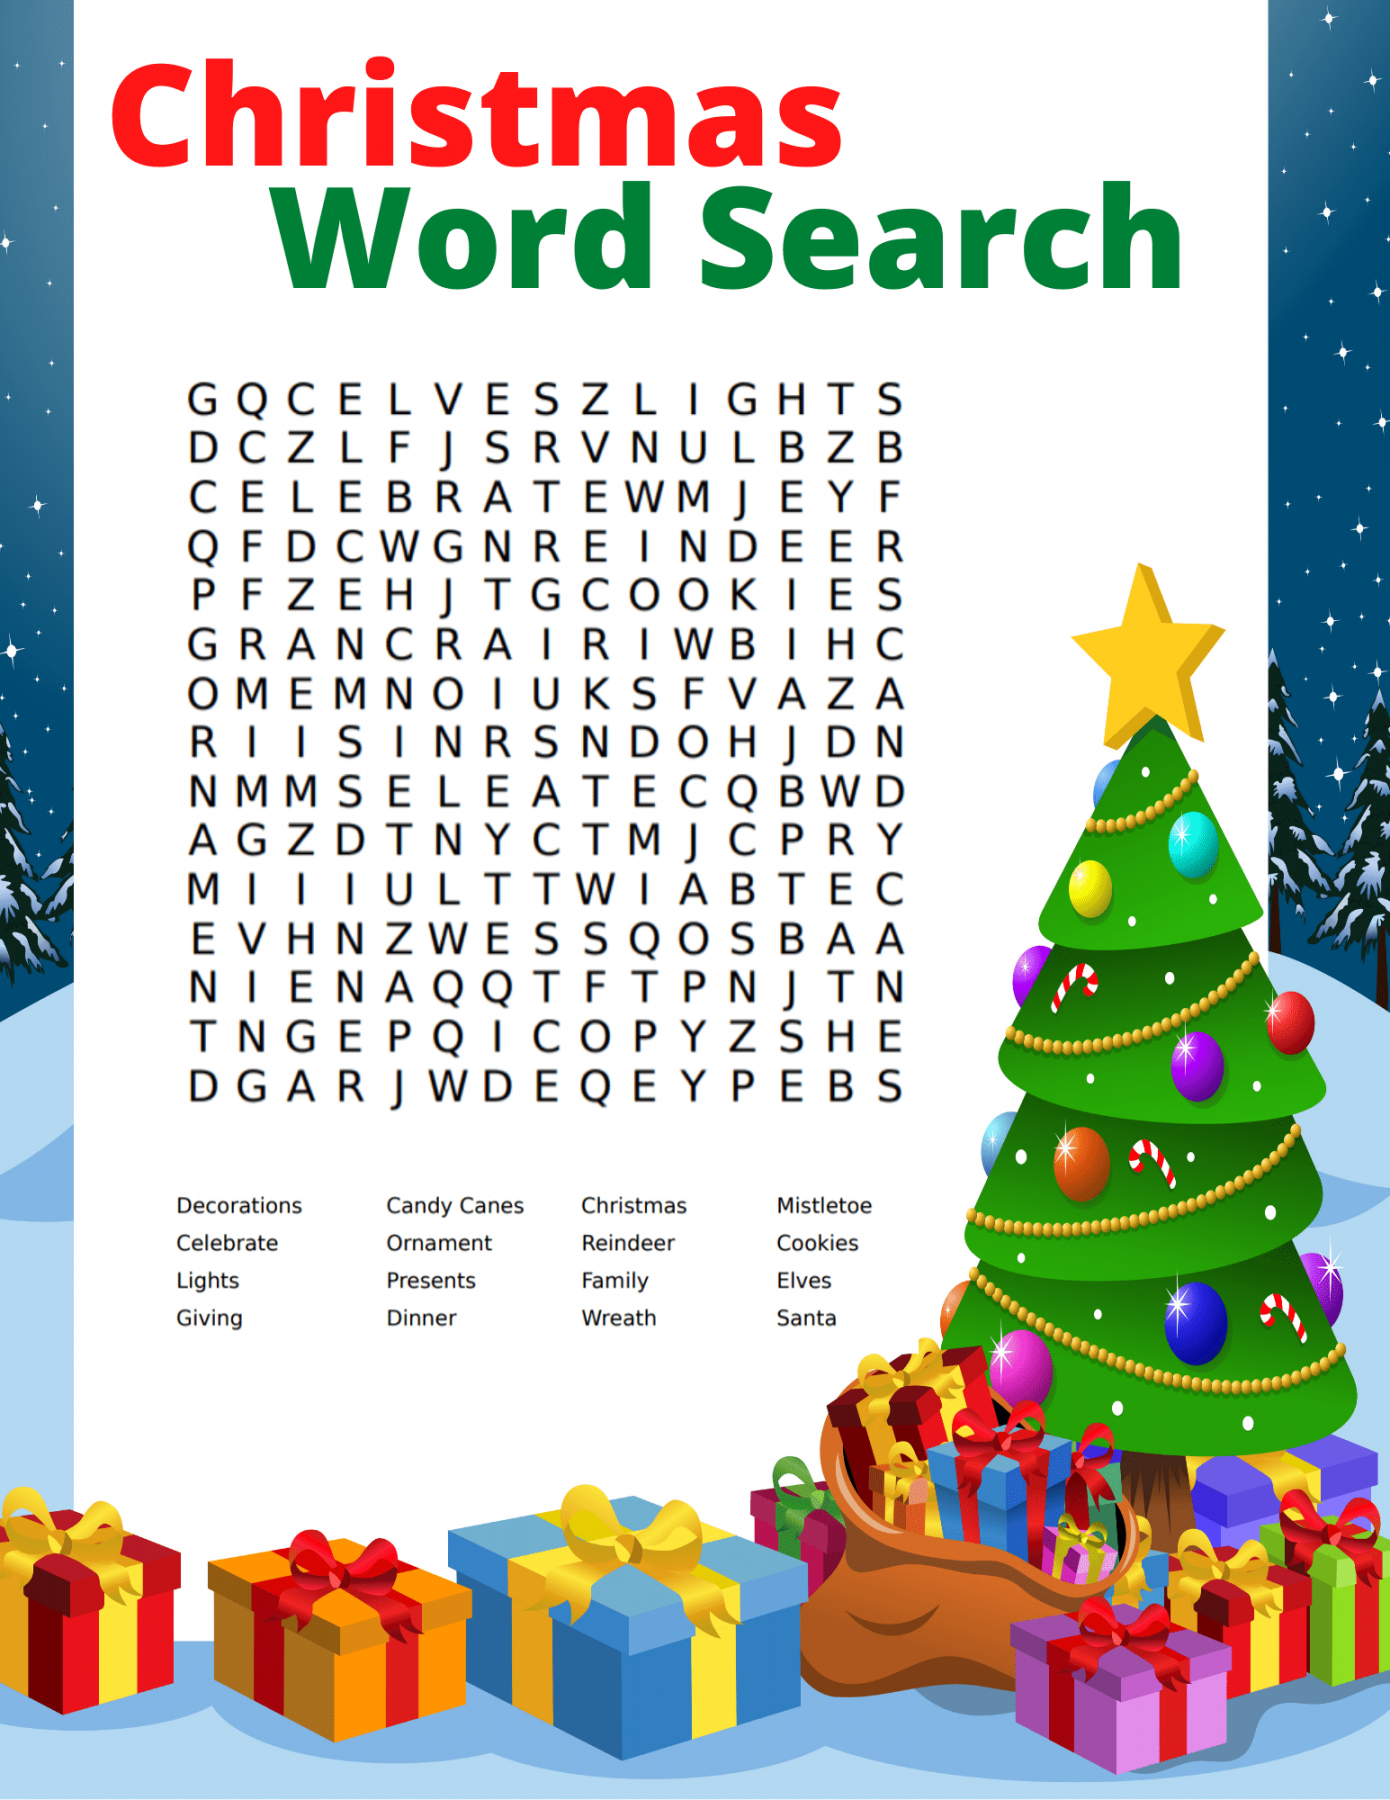 Christmas Word Search Free Printable - Printable - Free Christmas Word Search Printable for Kids and Adults